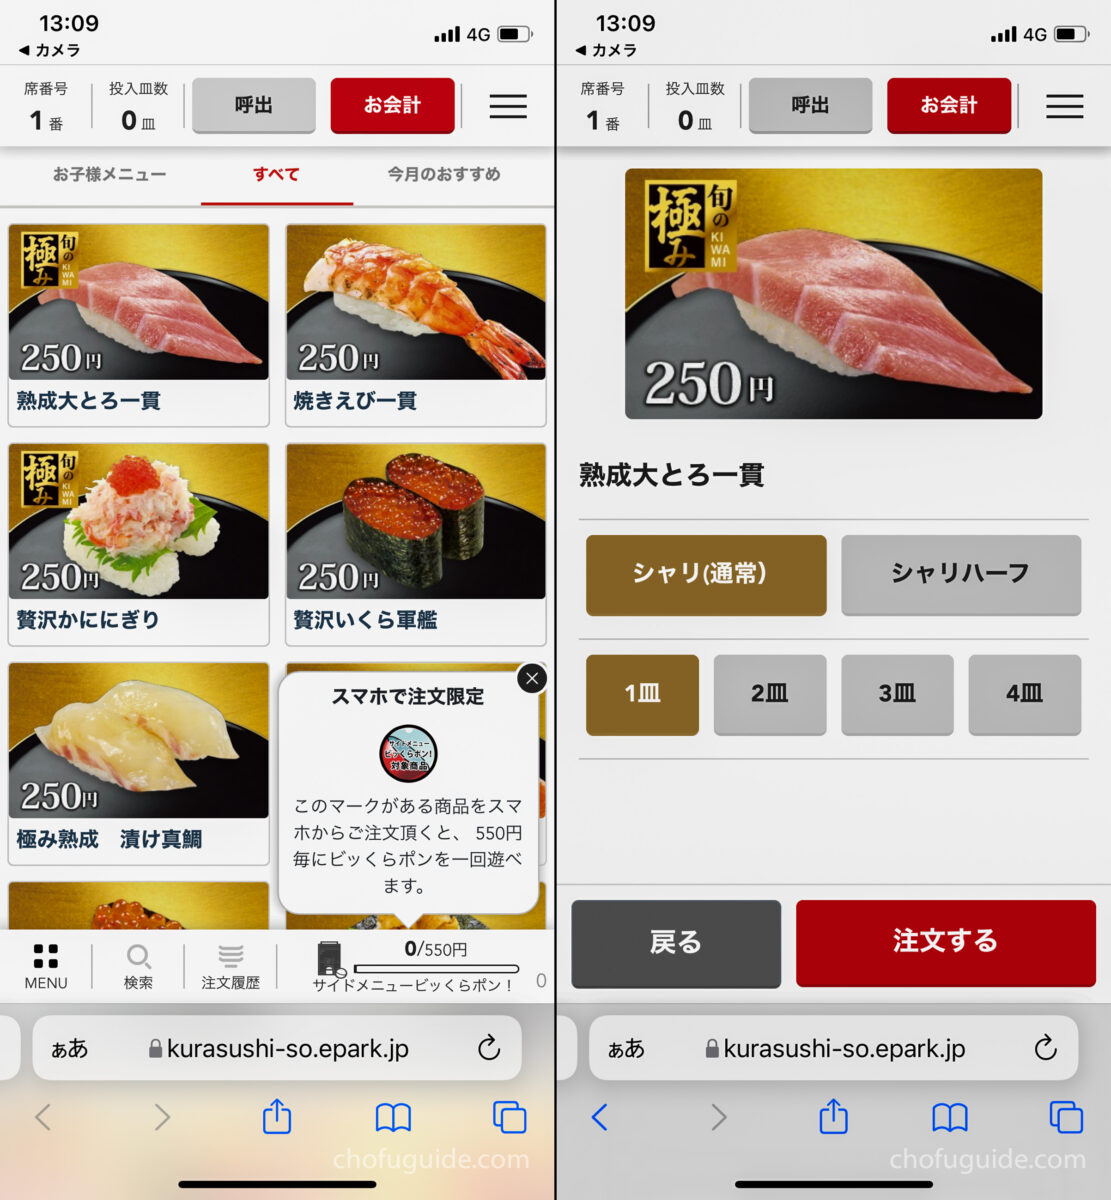 くら寿司のスマホアプリから注文